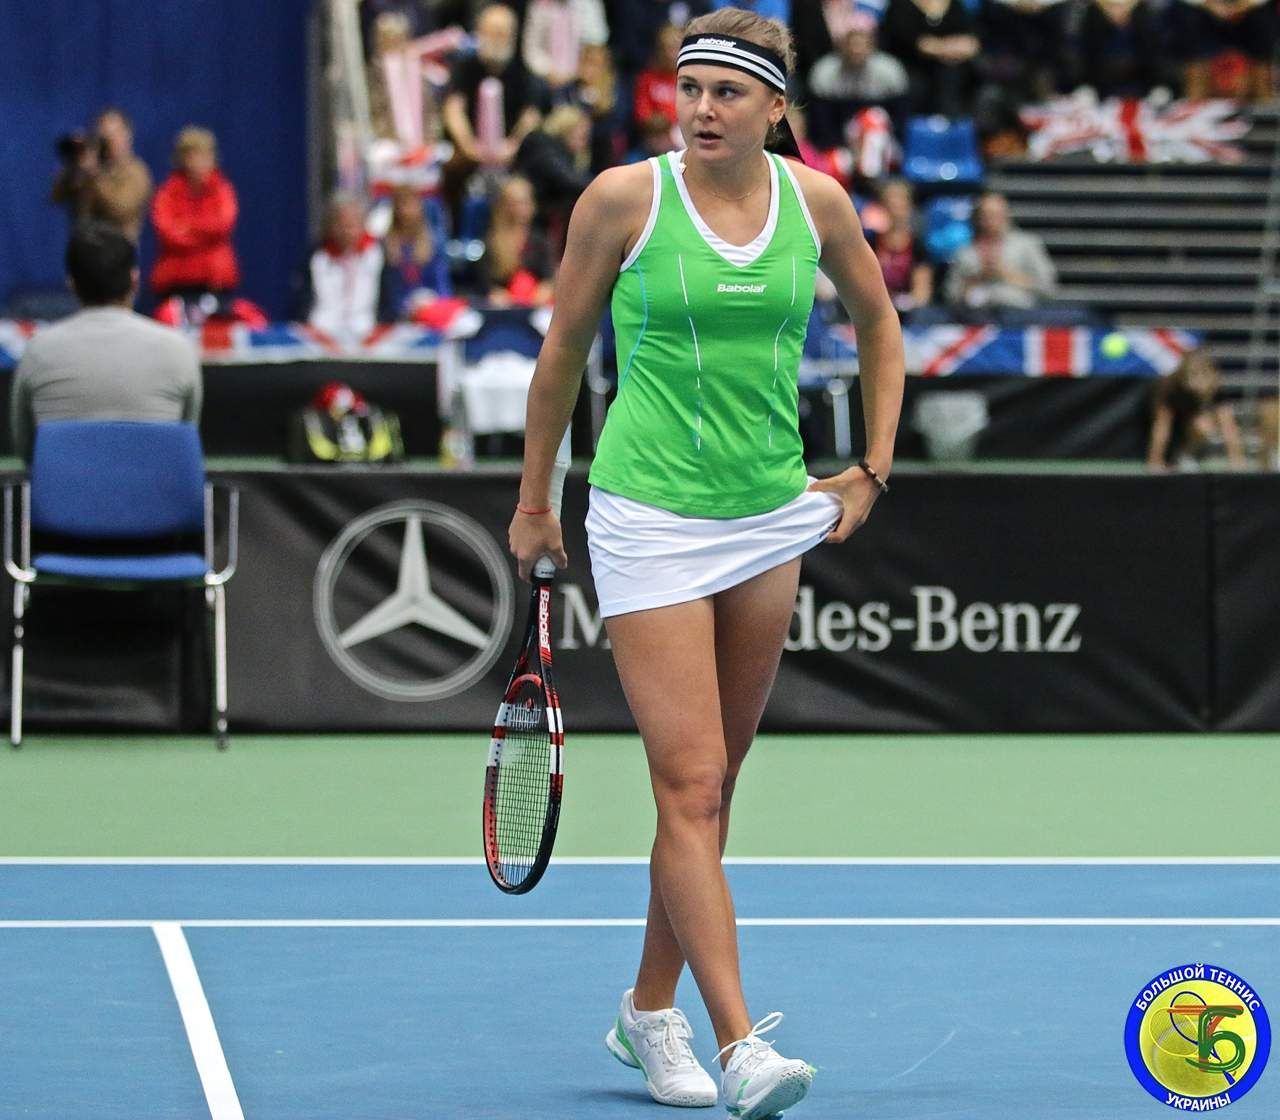 Українка Козлова вийшла у друге коло турніру WTA в Індіан-Уеллсі, Ястремська несподівано вибула